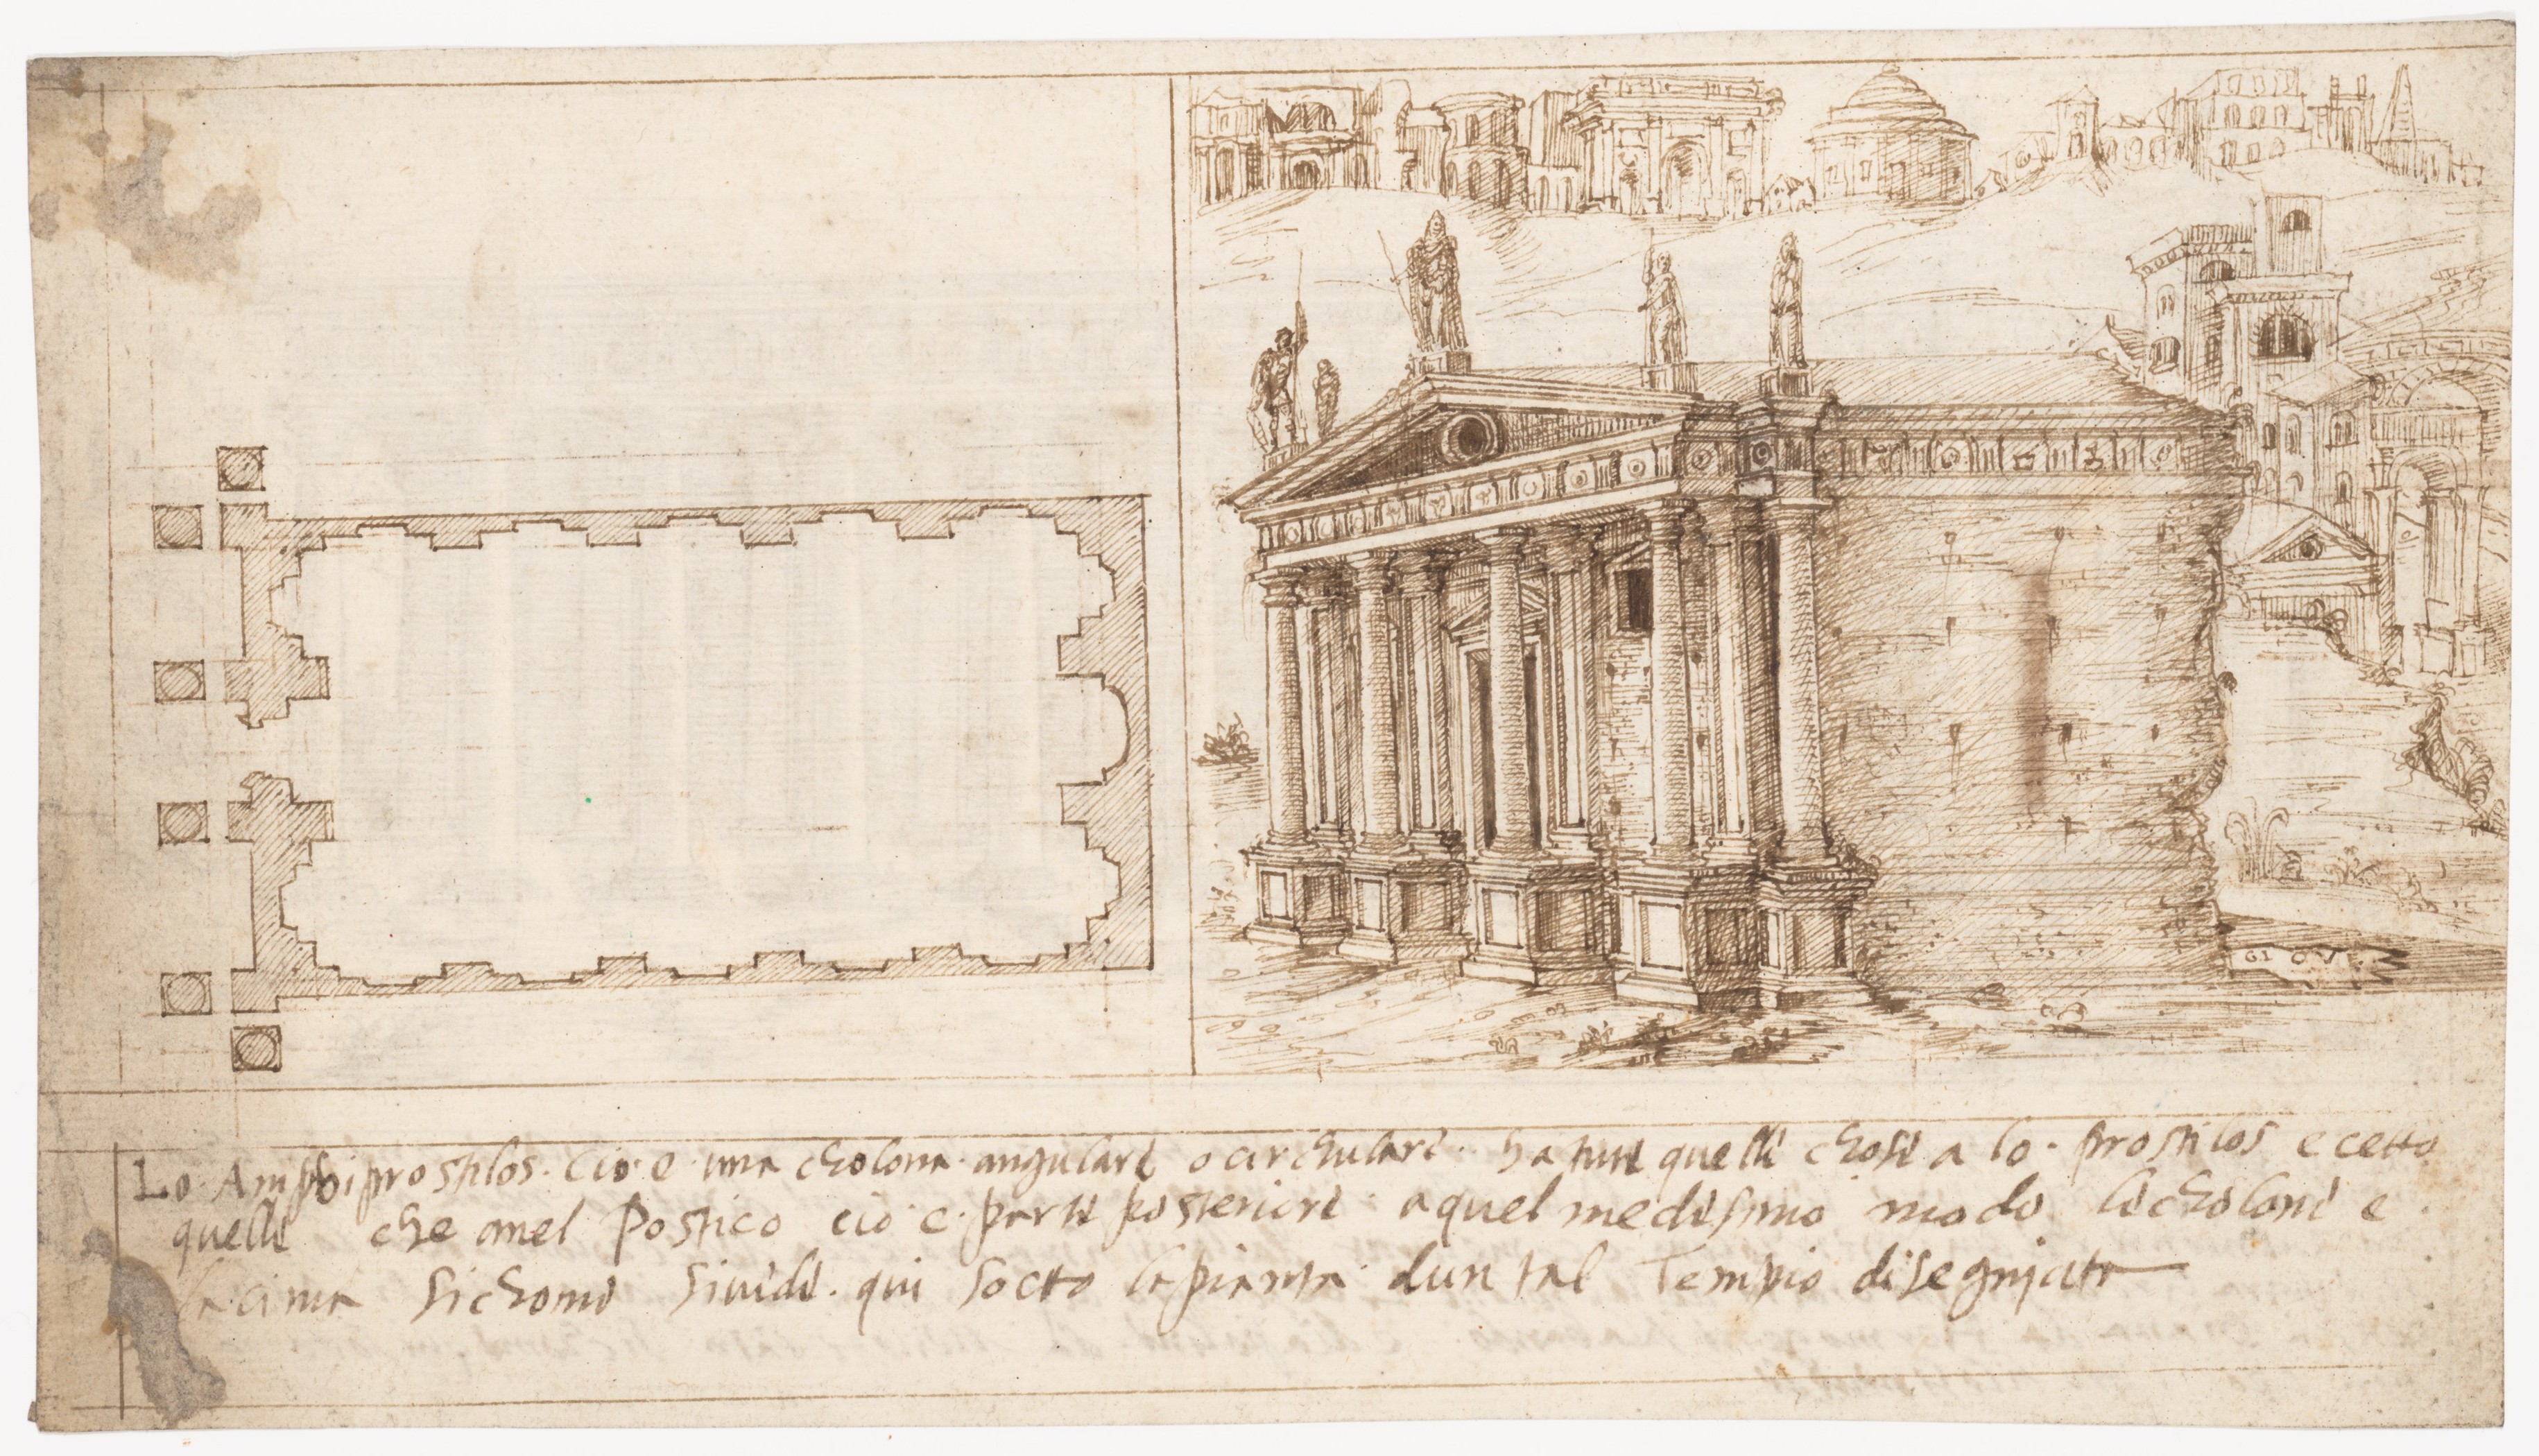 Disegno di una struttura architettonica romana sulla pagina destra, nel libro terzo di De architectura